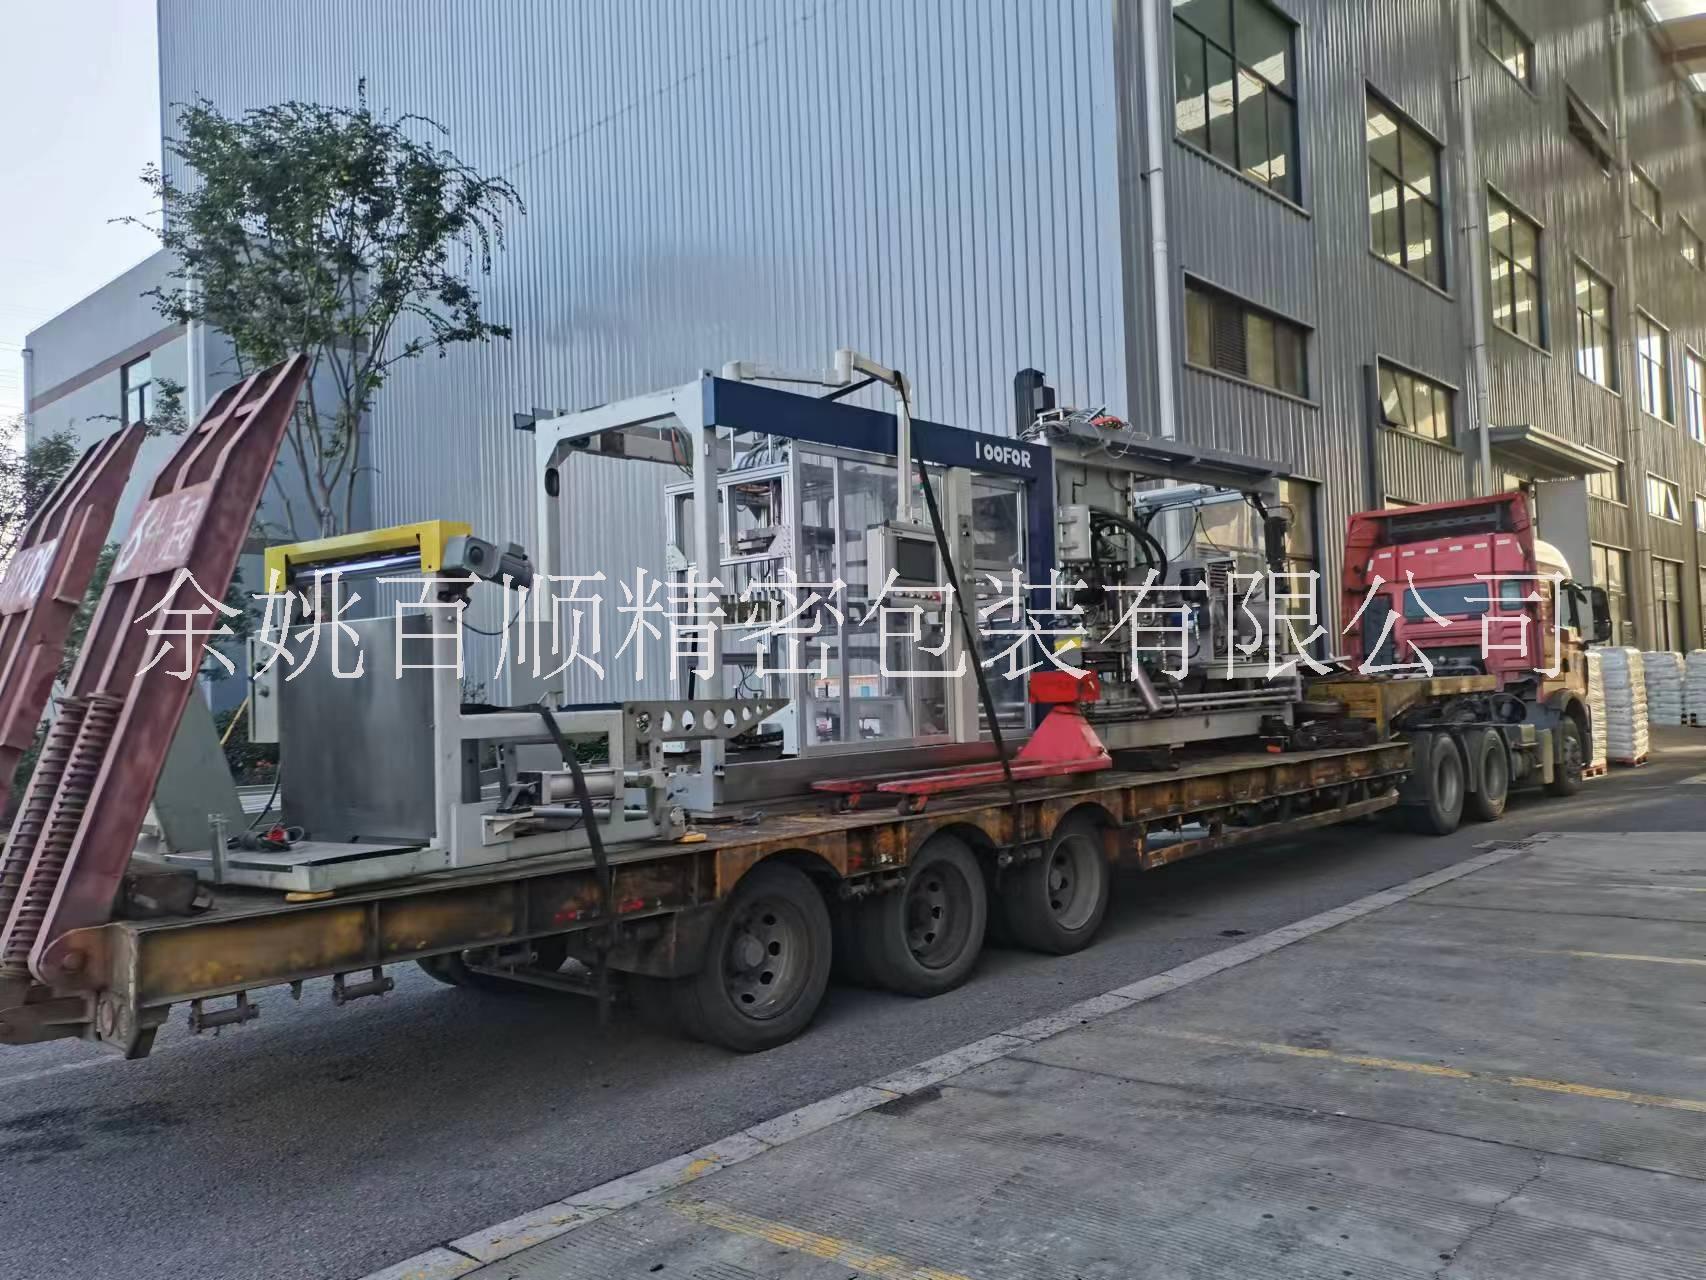 机械设备吊装 机械设备起重包装 浙江机械设备包装厂家15968989698图片